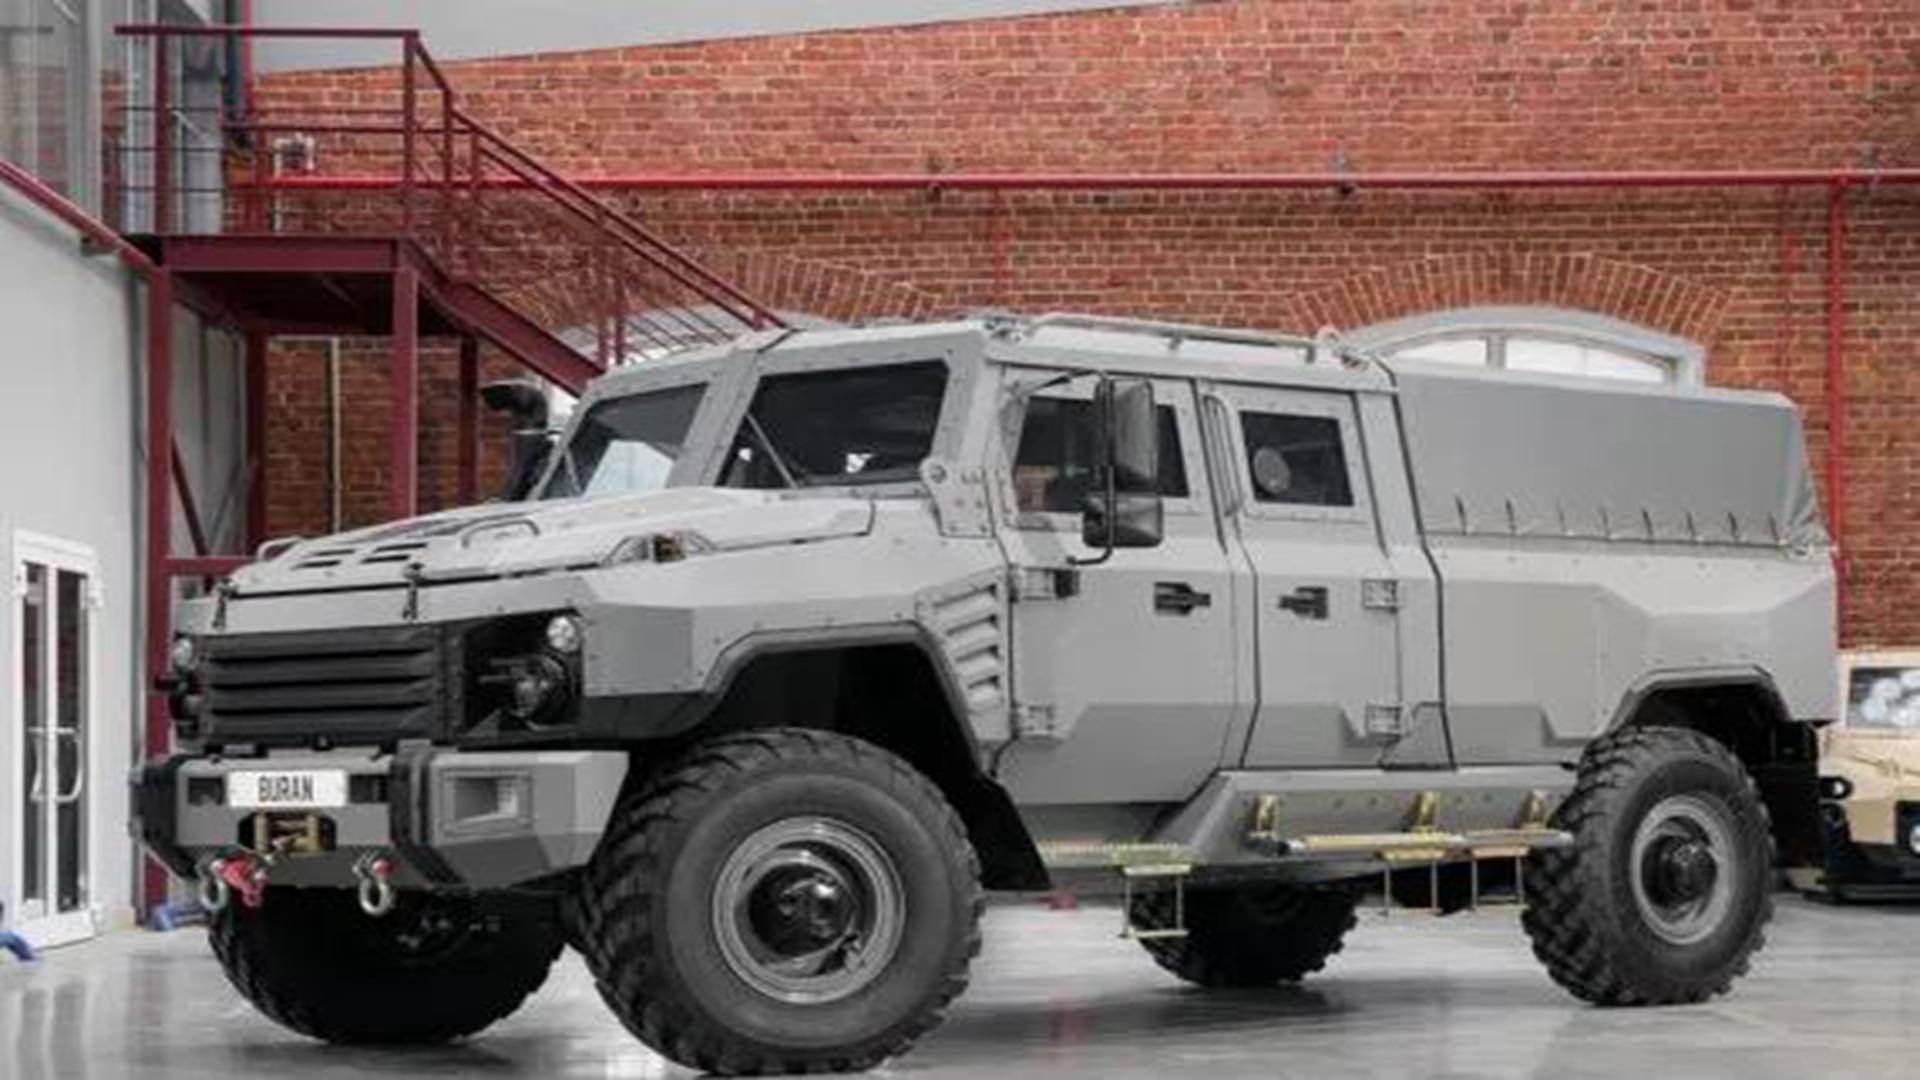 俄罗斯新款"布兰"装甲车,充满西方设计元素,备受各方赏识